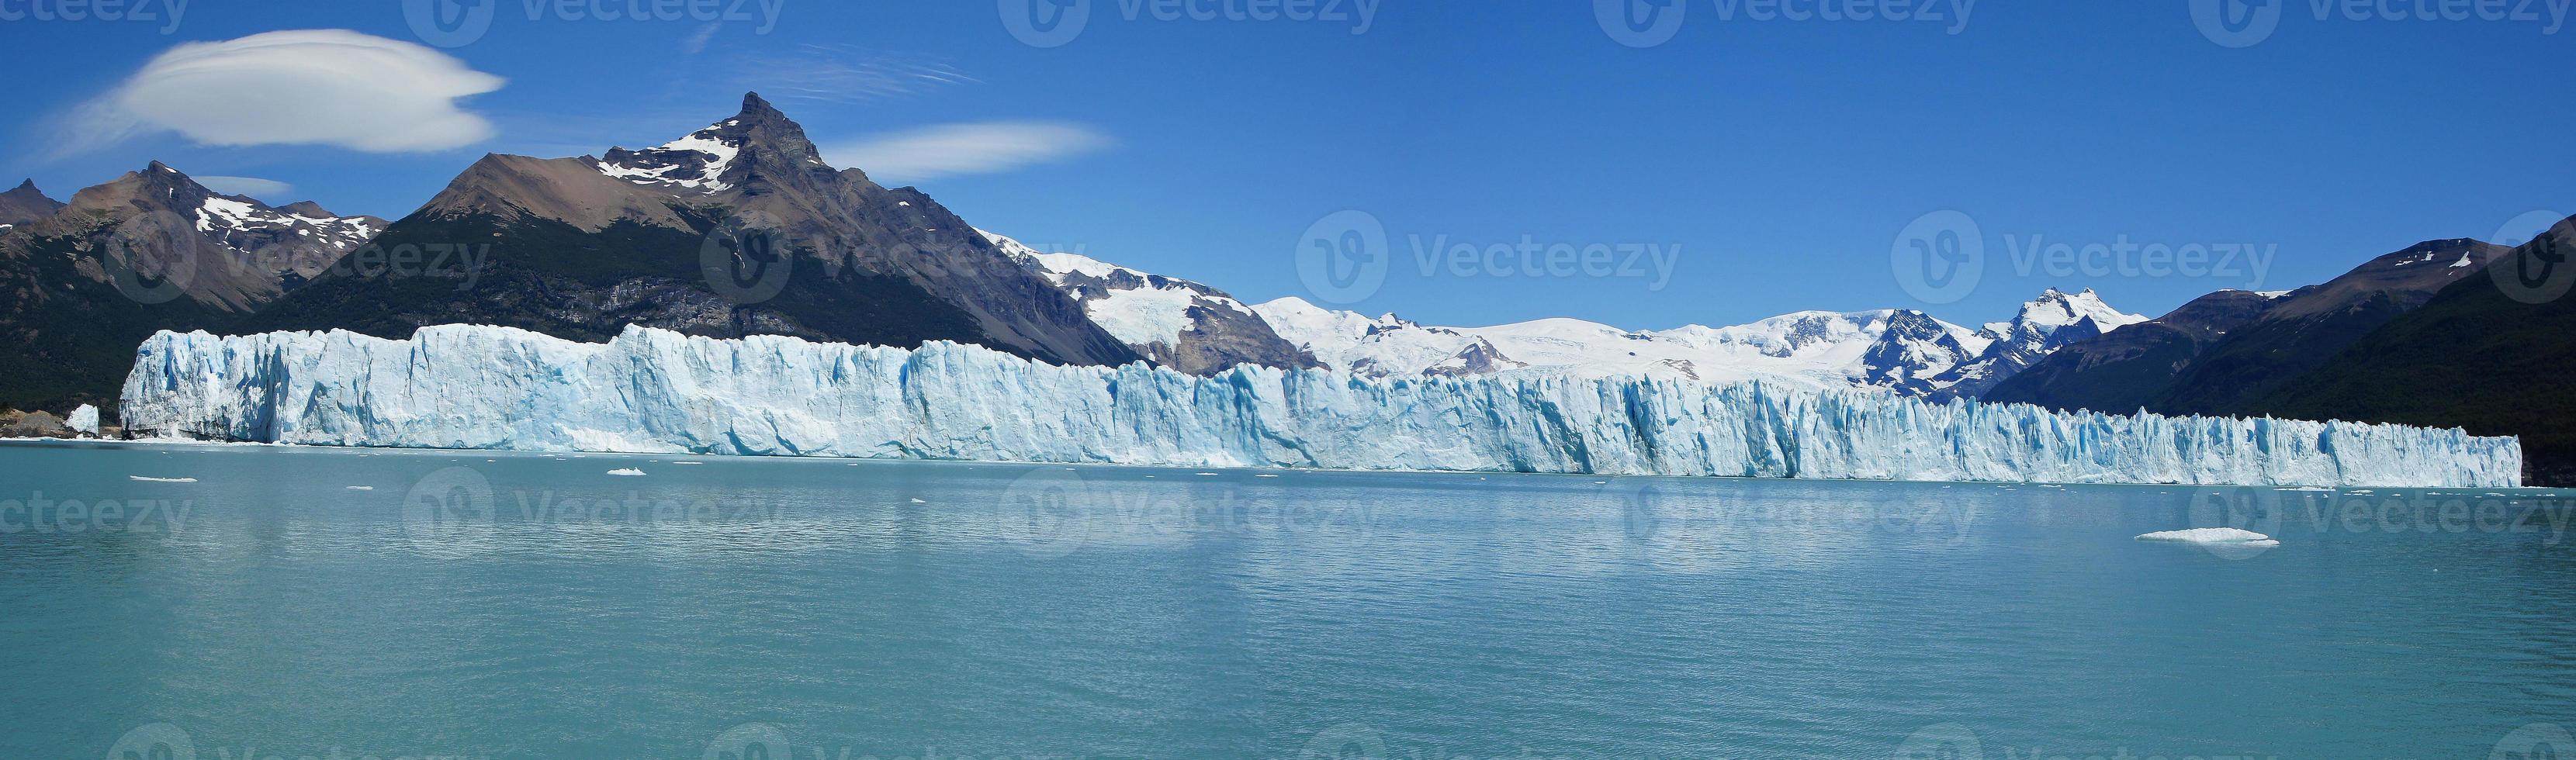 Perito Moreno Glacier, Argentinia photo